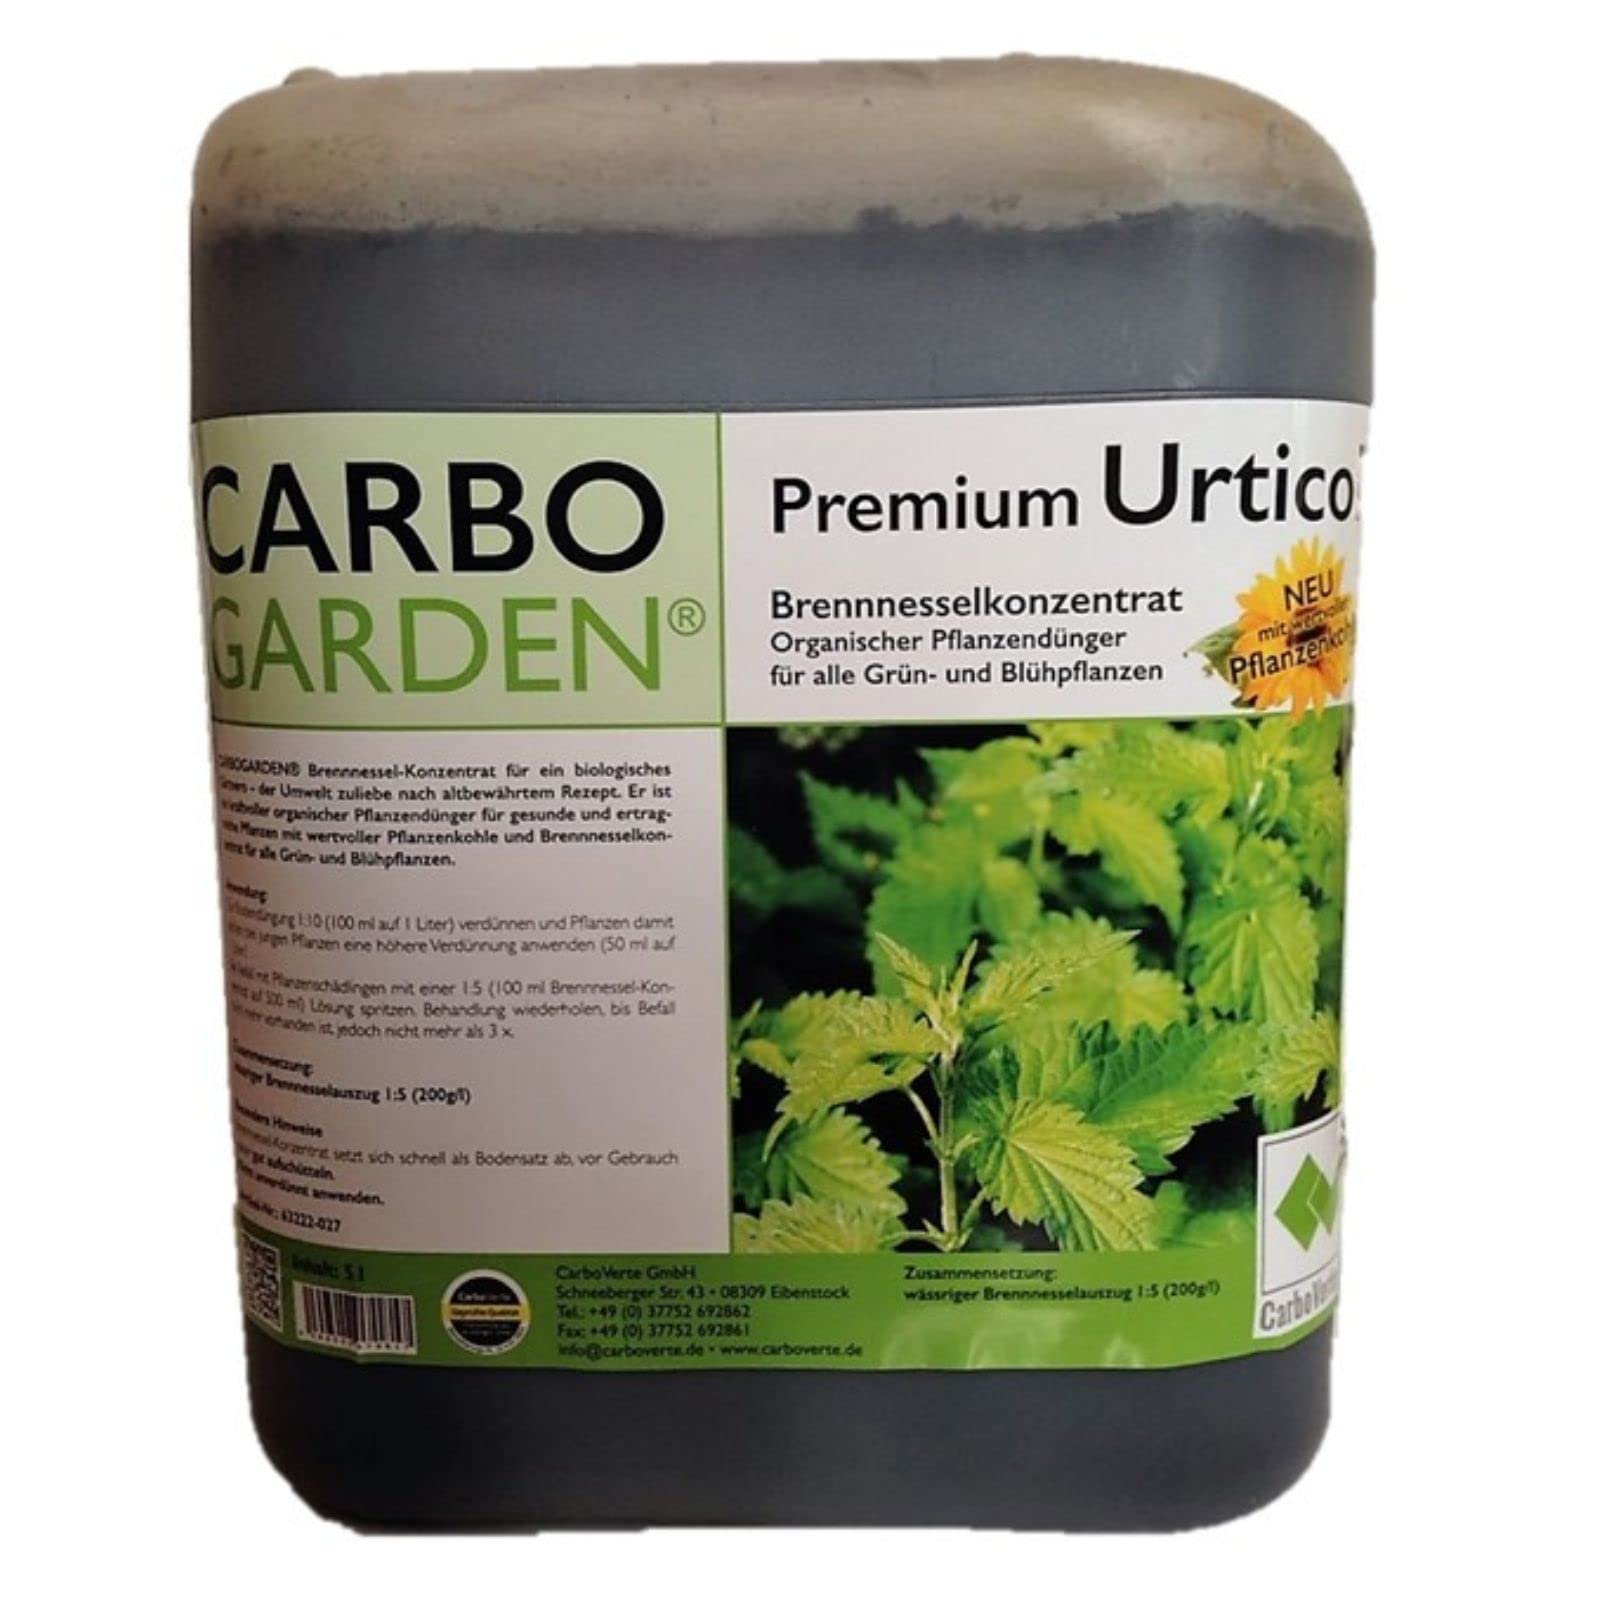 Carbo Verte Urticol Brennnesselkonzentrat 5 L, Brennnesseljauche, Brennnesselsud, Grundstoff Urtica und Pflanzenkohle geruchsarm, mit Biokohle veredelt, für gesunde und Starke Pflanzen